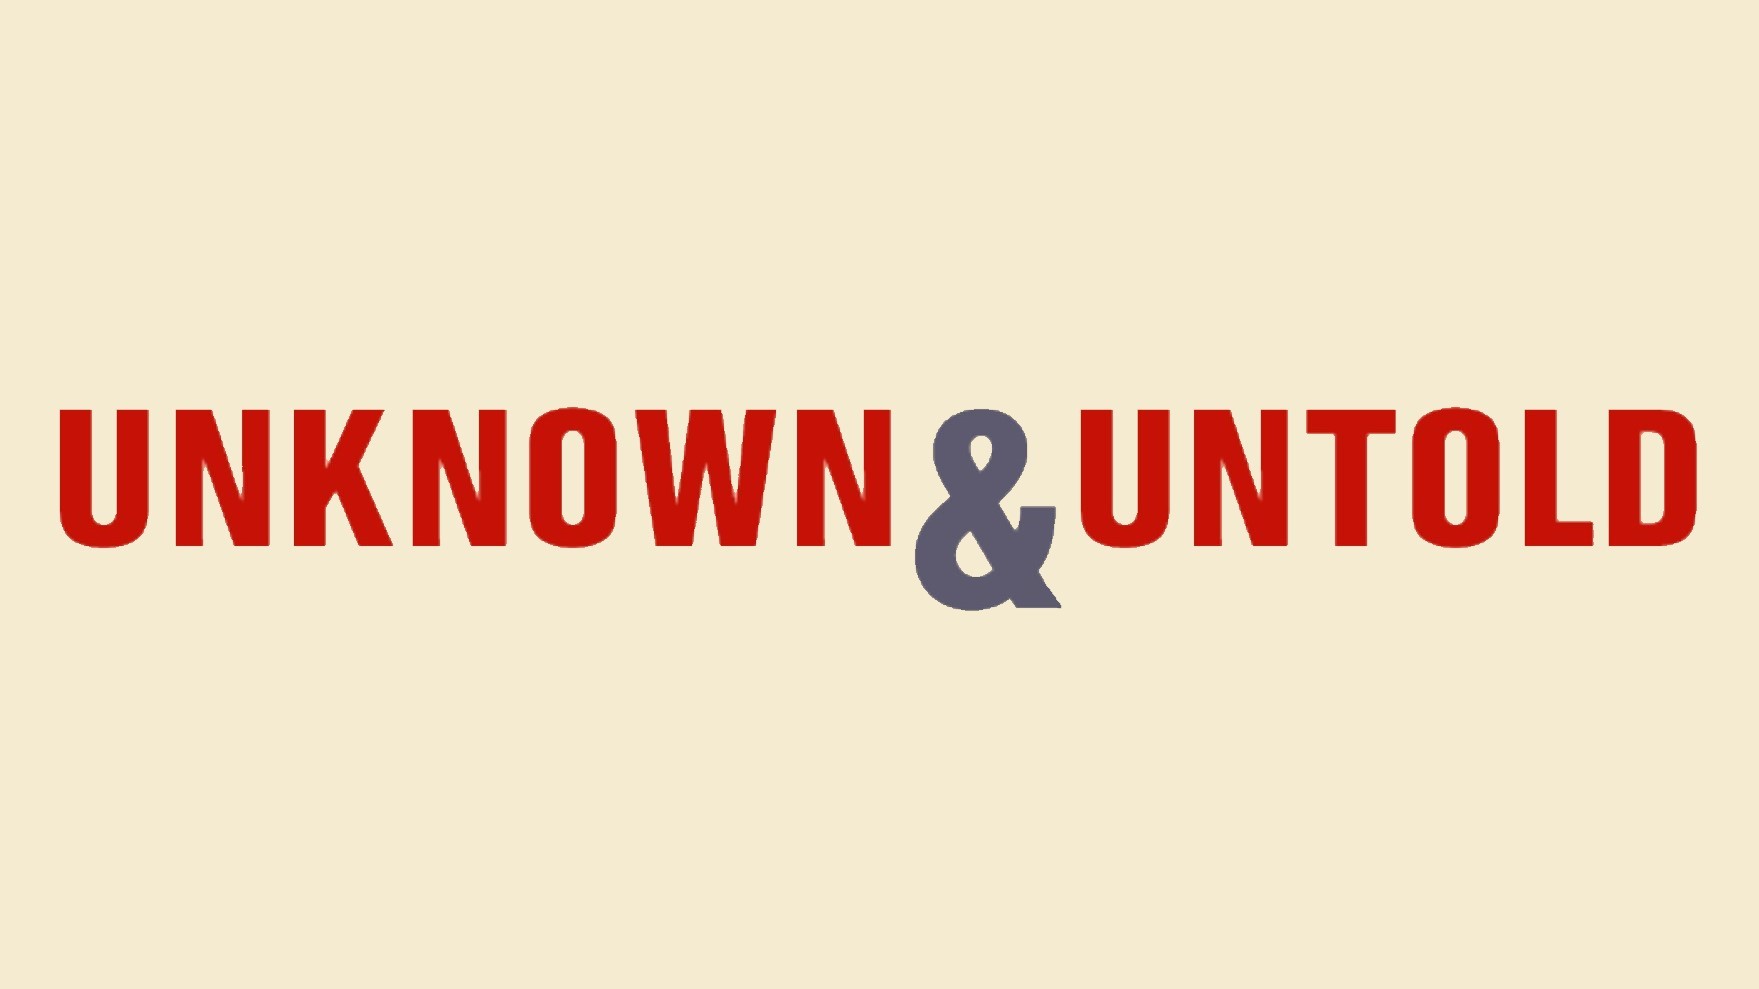 Logo: Unknown & Untold